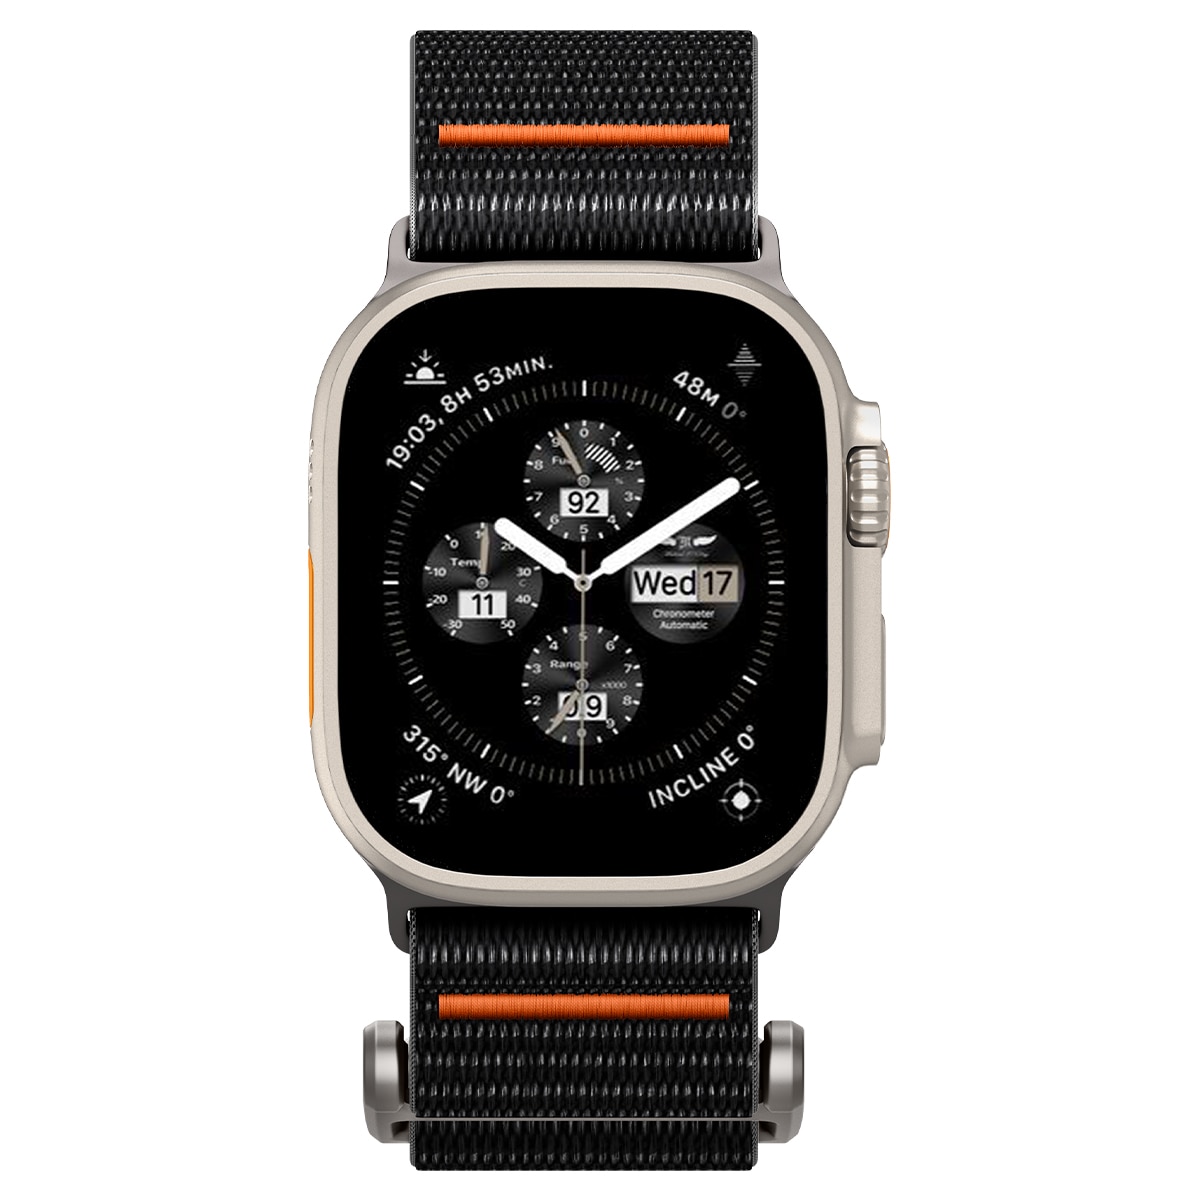 DuraPro Flex Ultra Apple Watch 45mm Series 7 Zwart